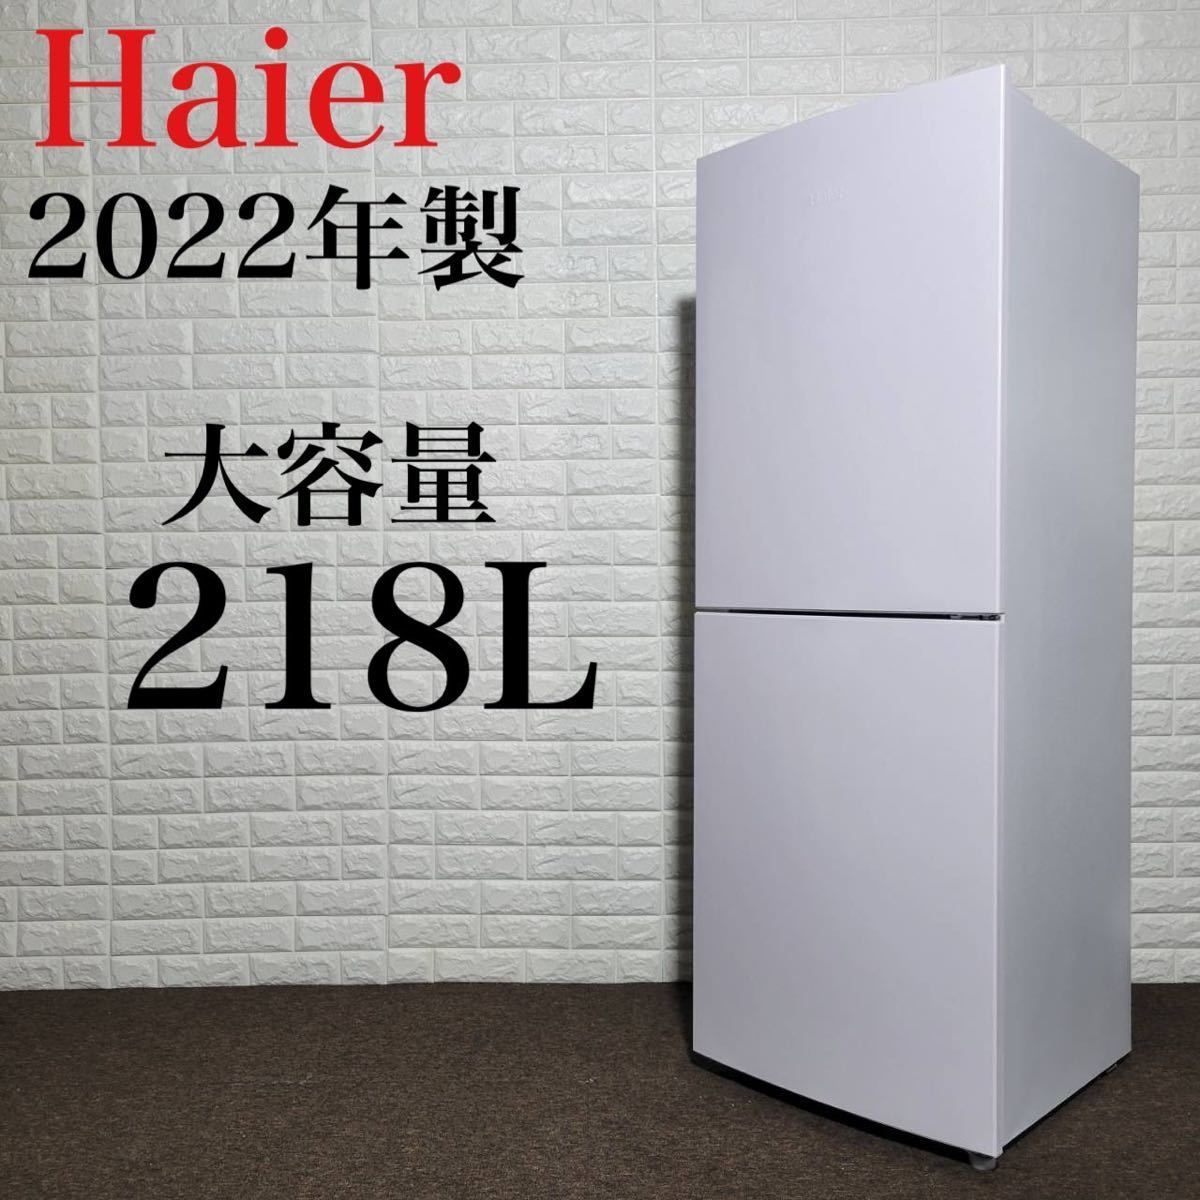 品質のいい JR-NF218B 冷蔵庫 ハイアール 2022年製 M0305 218L 大容量